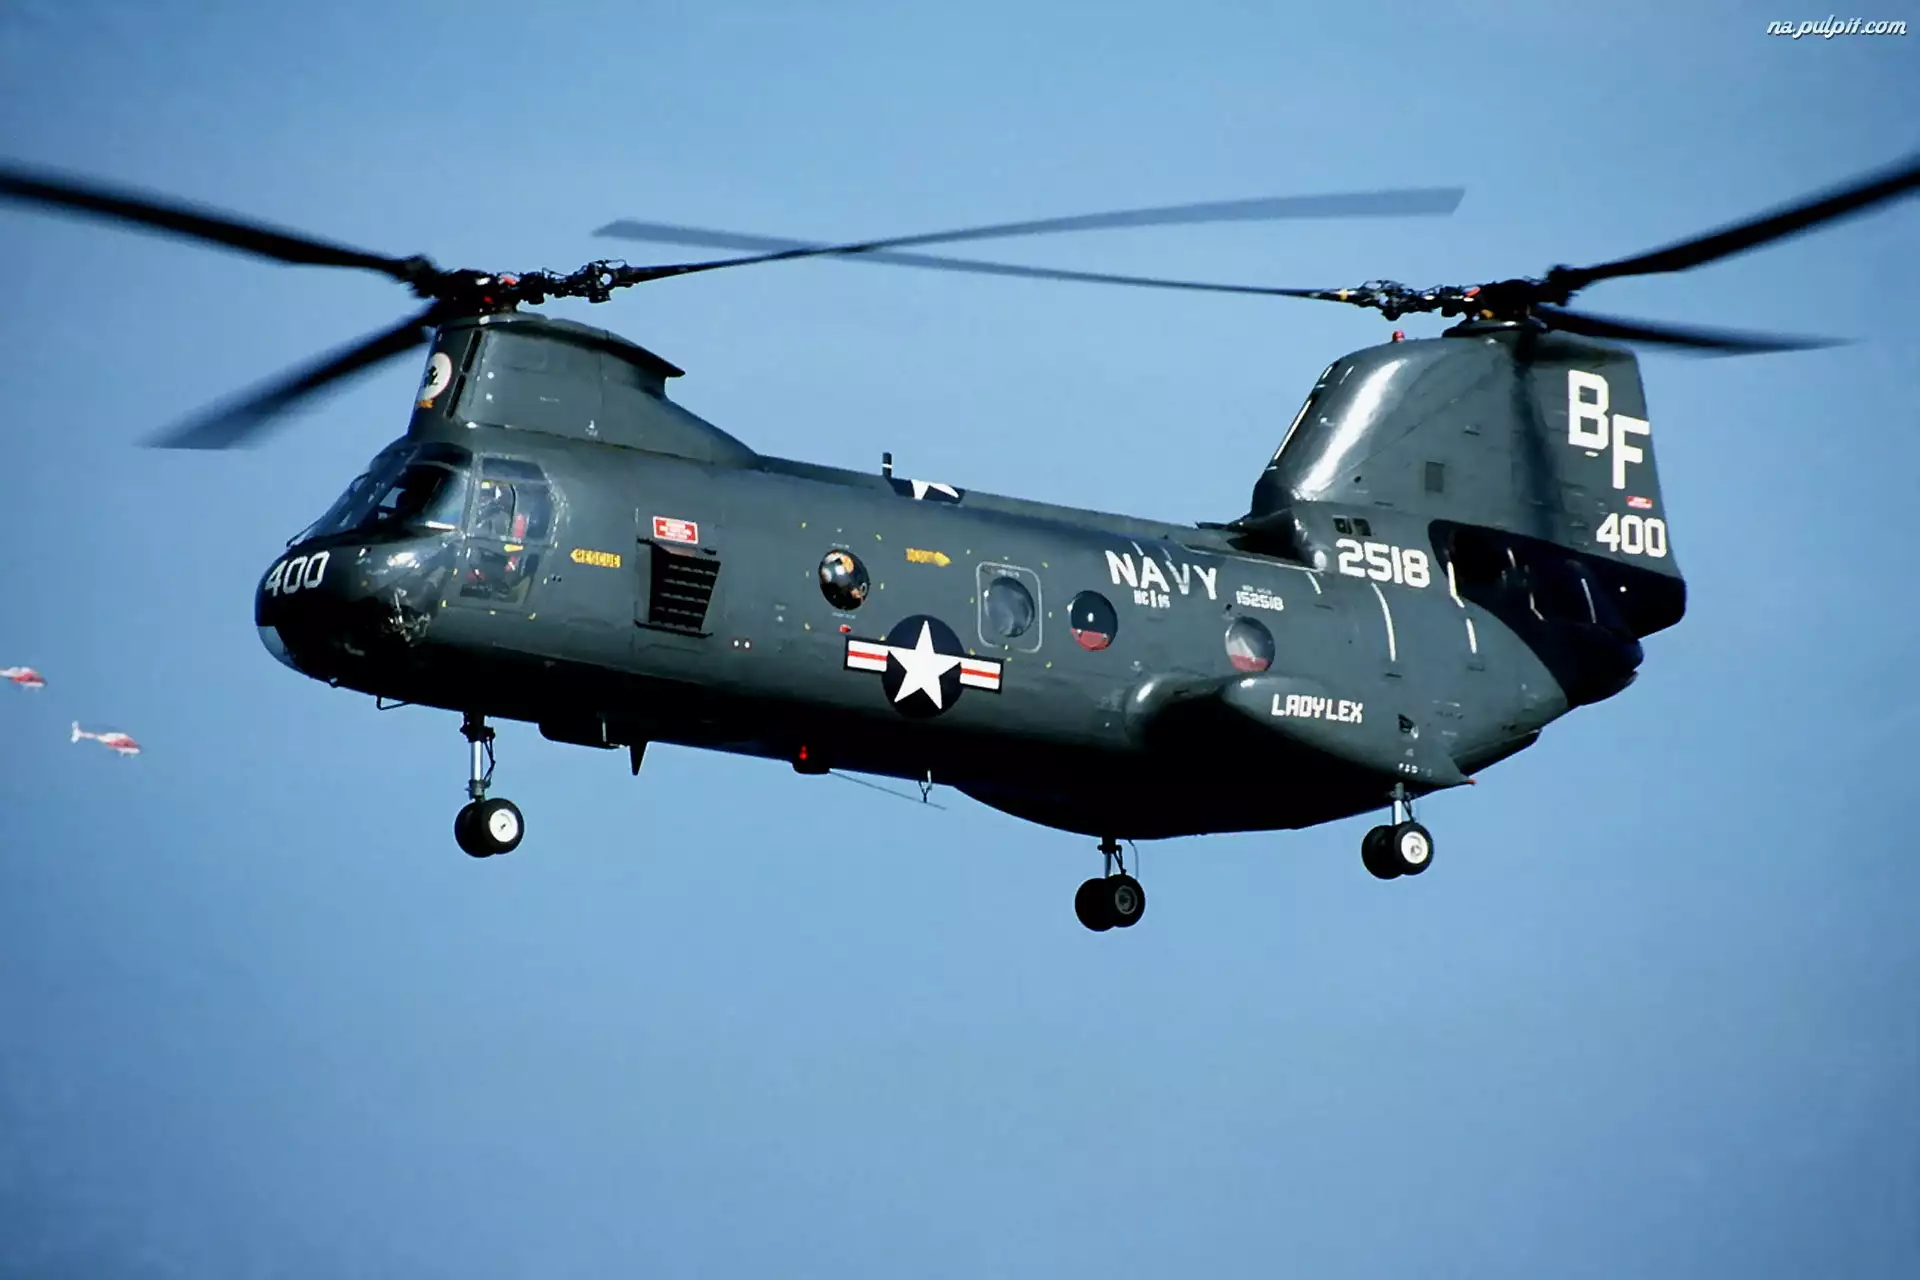 CH-46, Boeing, Sea Knight